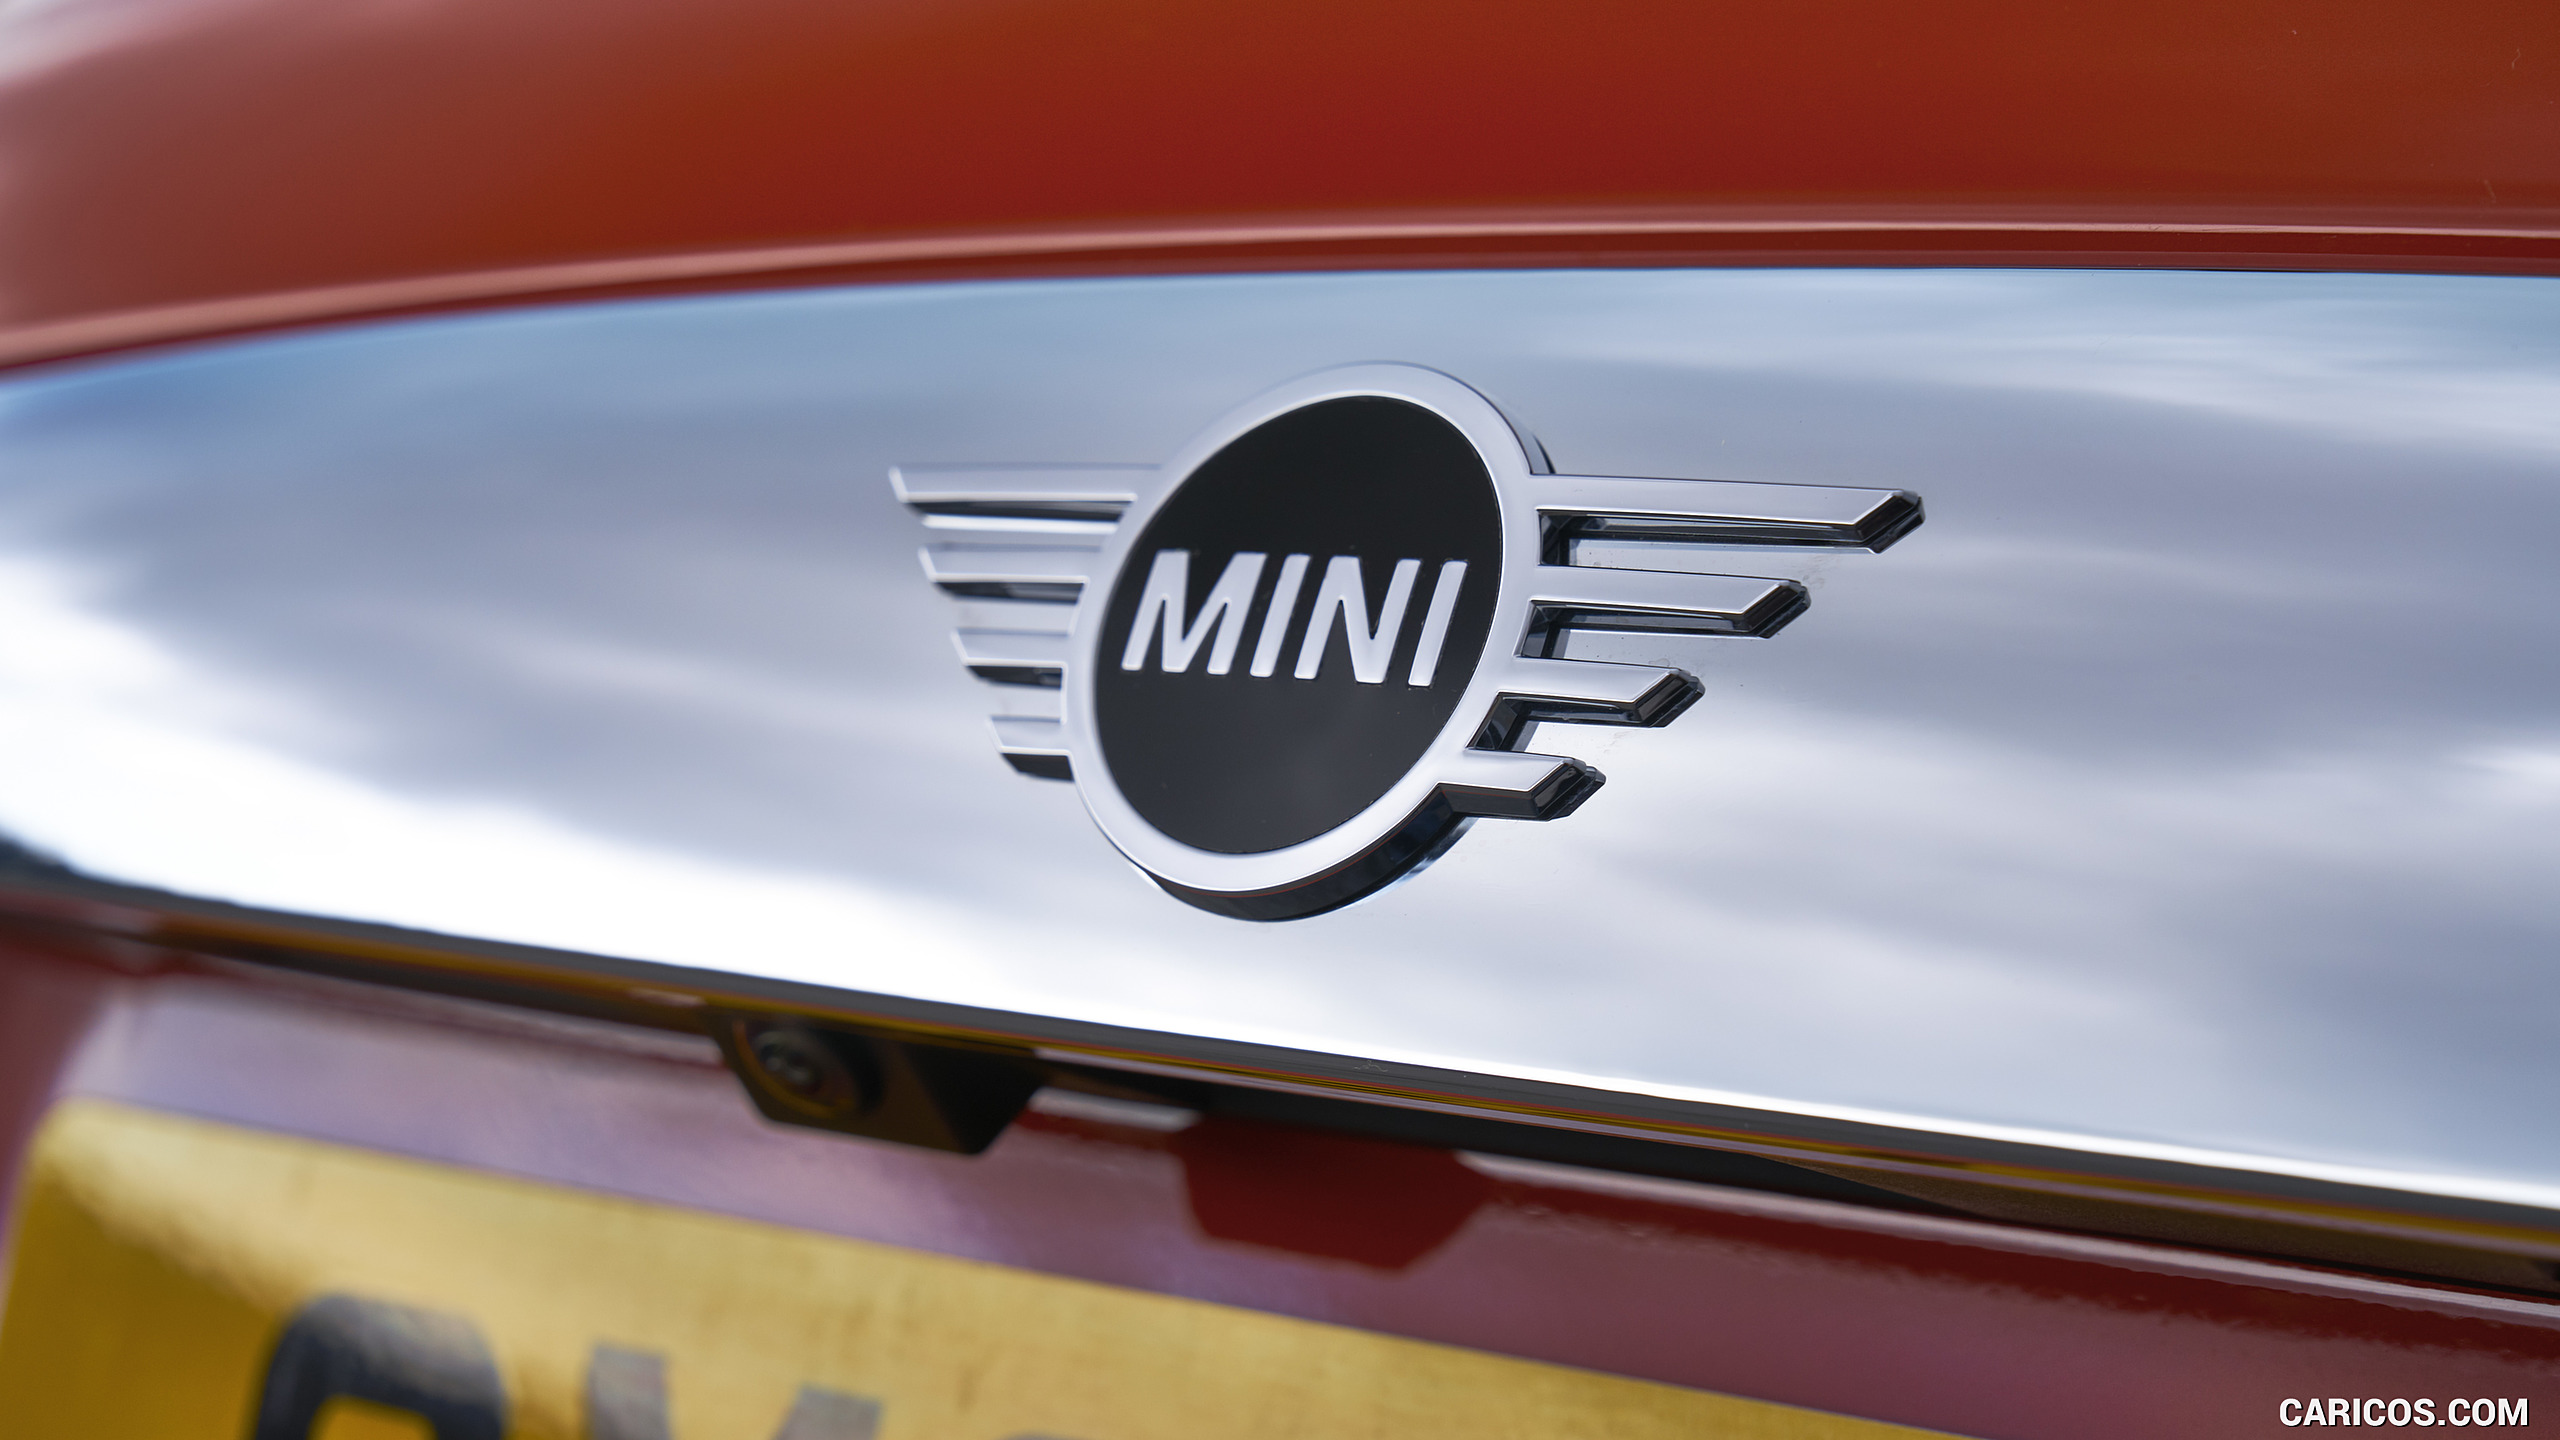 2019 MINI Hardtop 2 Door - Badge, #157 of 160